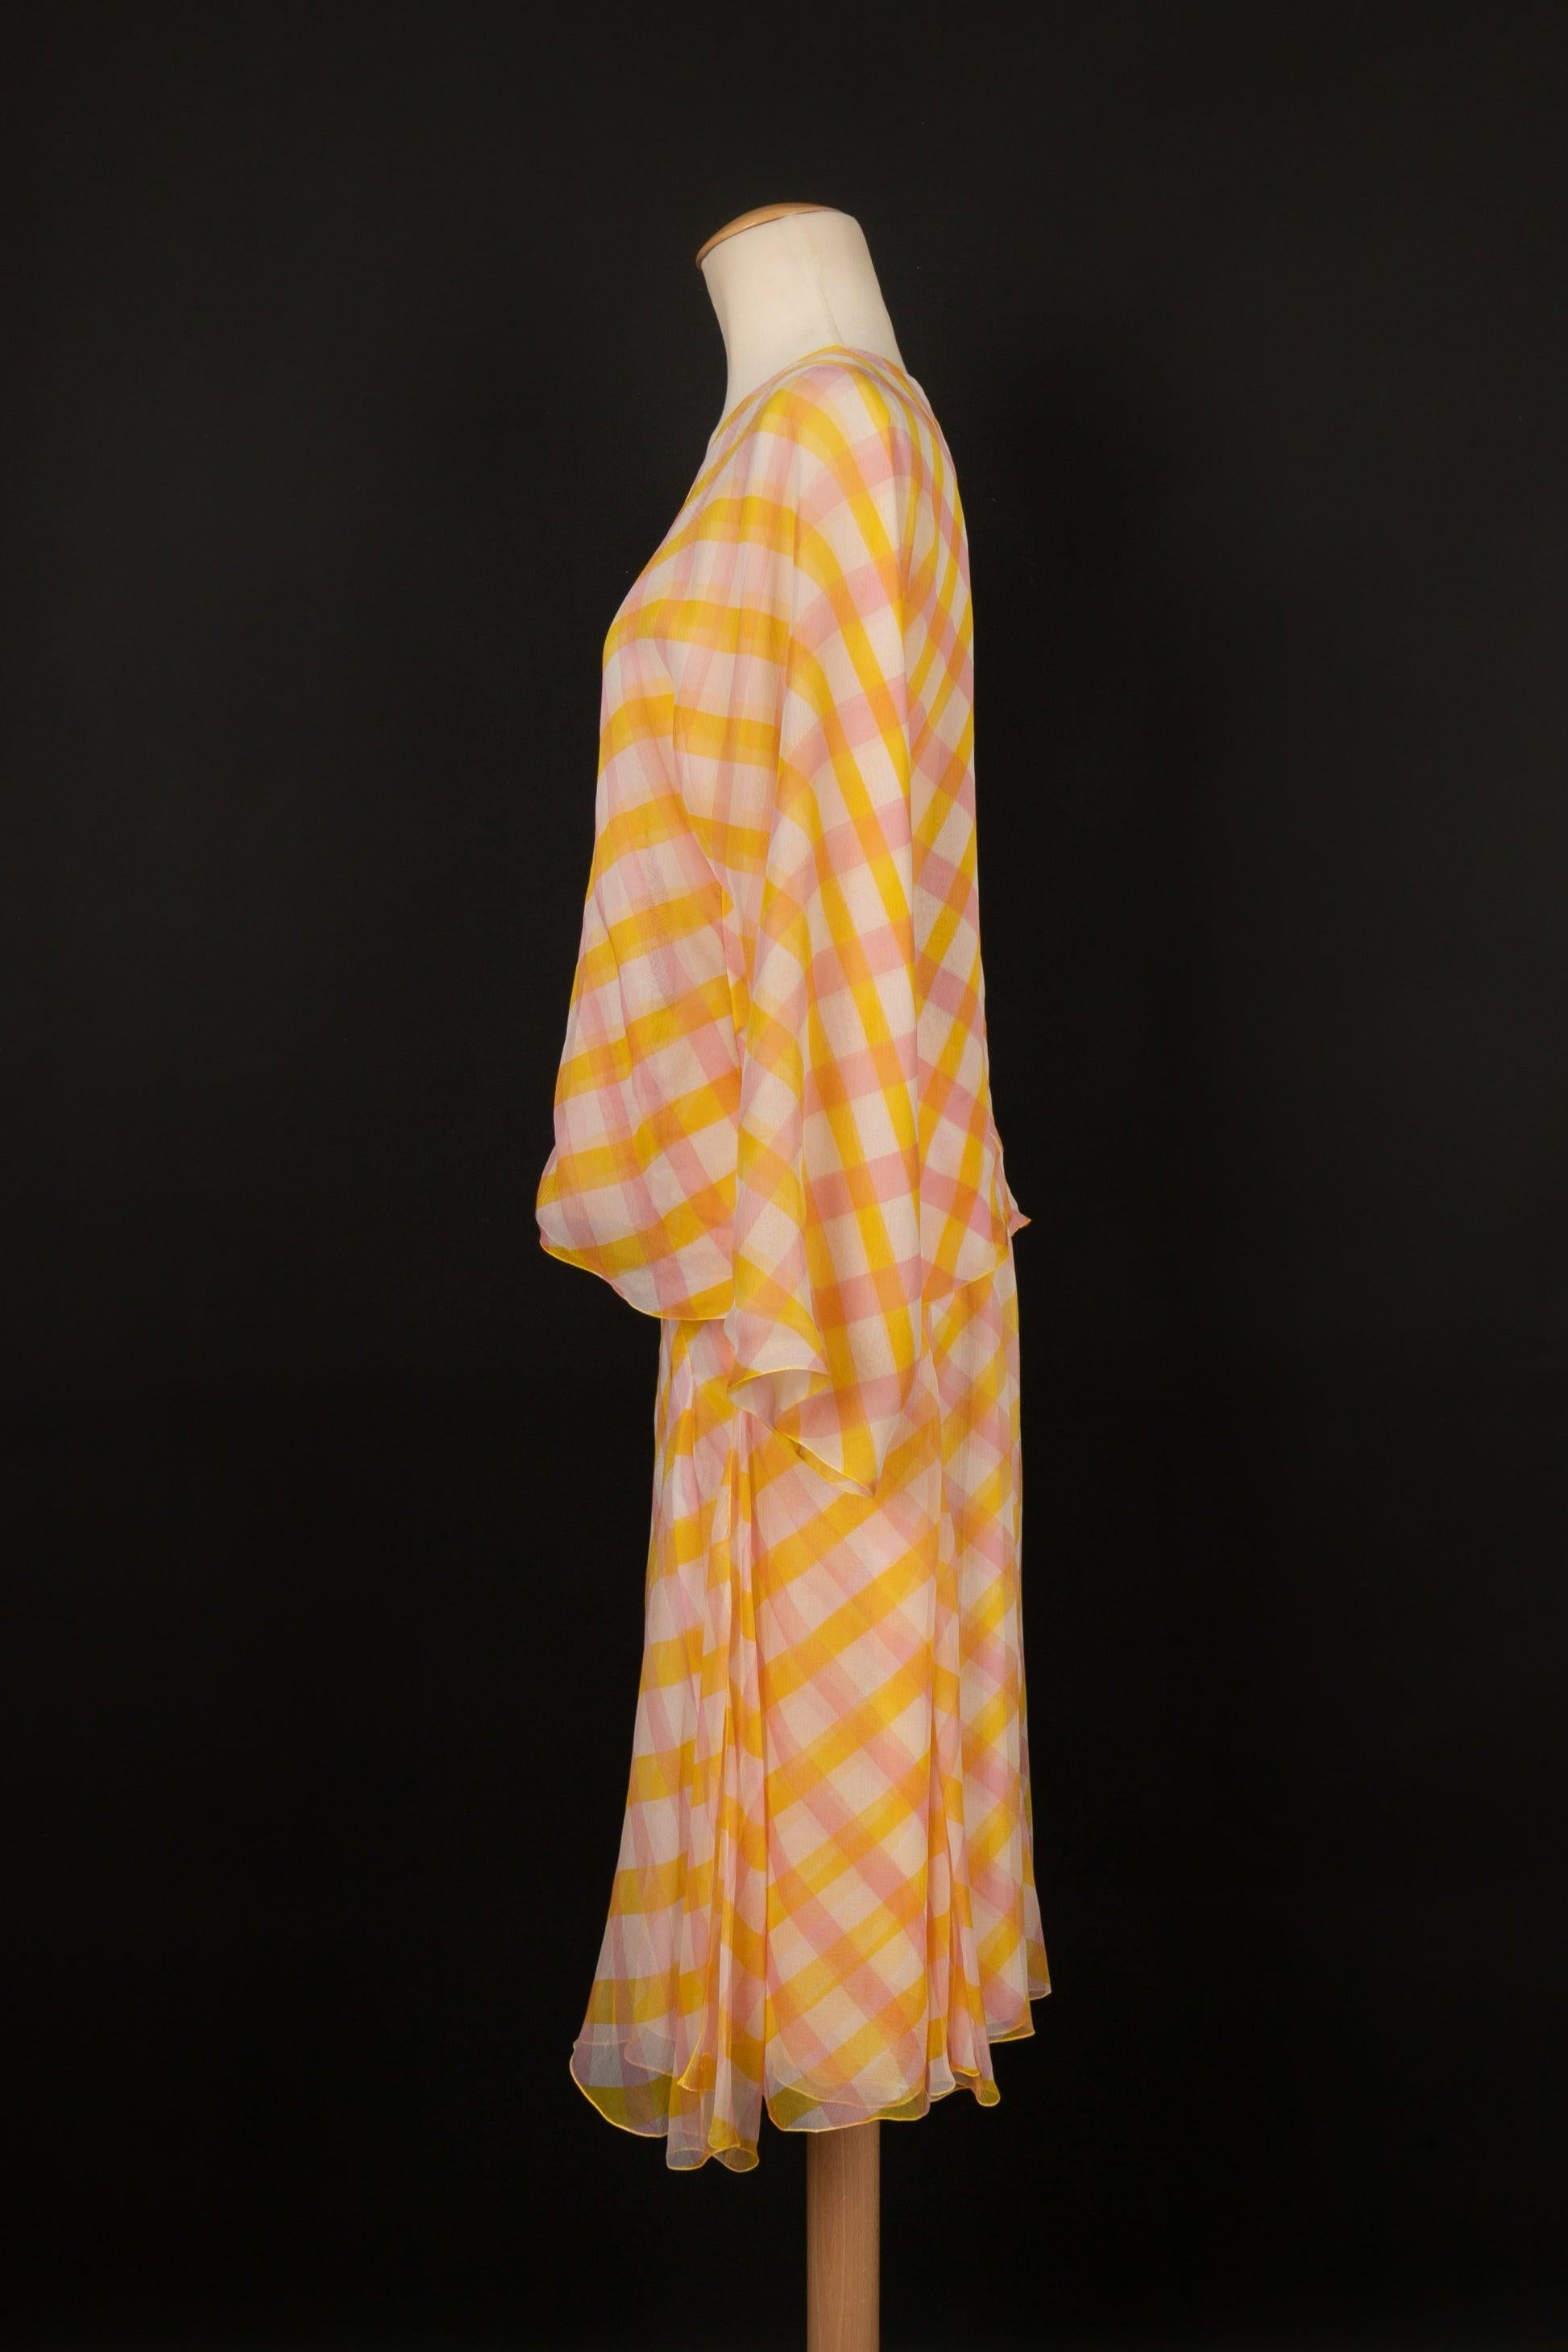 Chanel - (Made in France) Ensemble composé d'un top à nouer et d'une jupe en crêpe de mousseline de soie imprimé d'un motif à carreaux jaune, rose et blanc cassé. Taille indiquée 38FR. Croisière 1999 Collectional.

Informations complémentaires